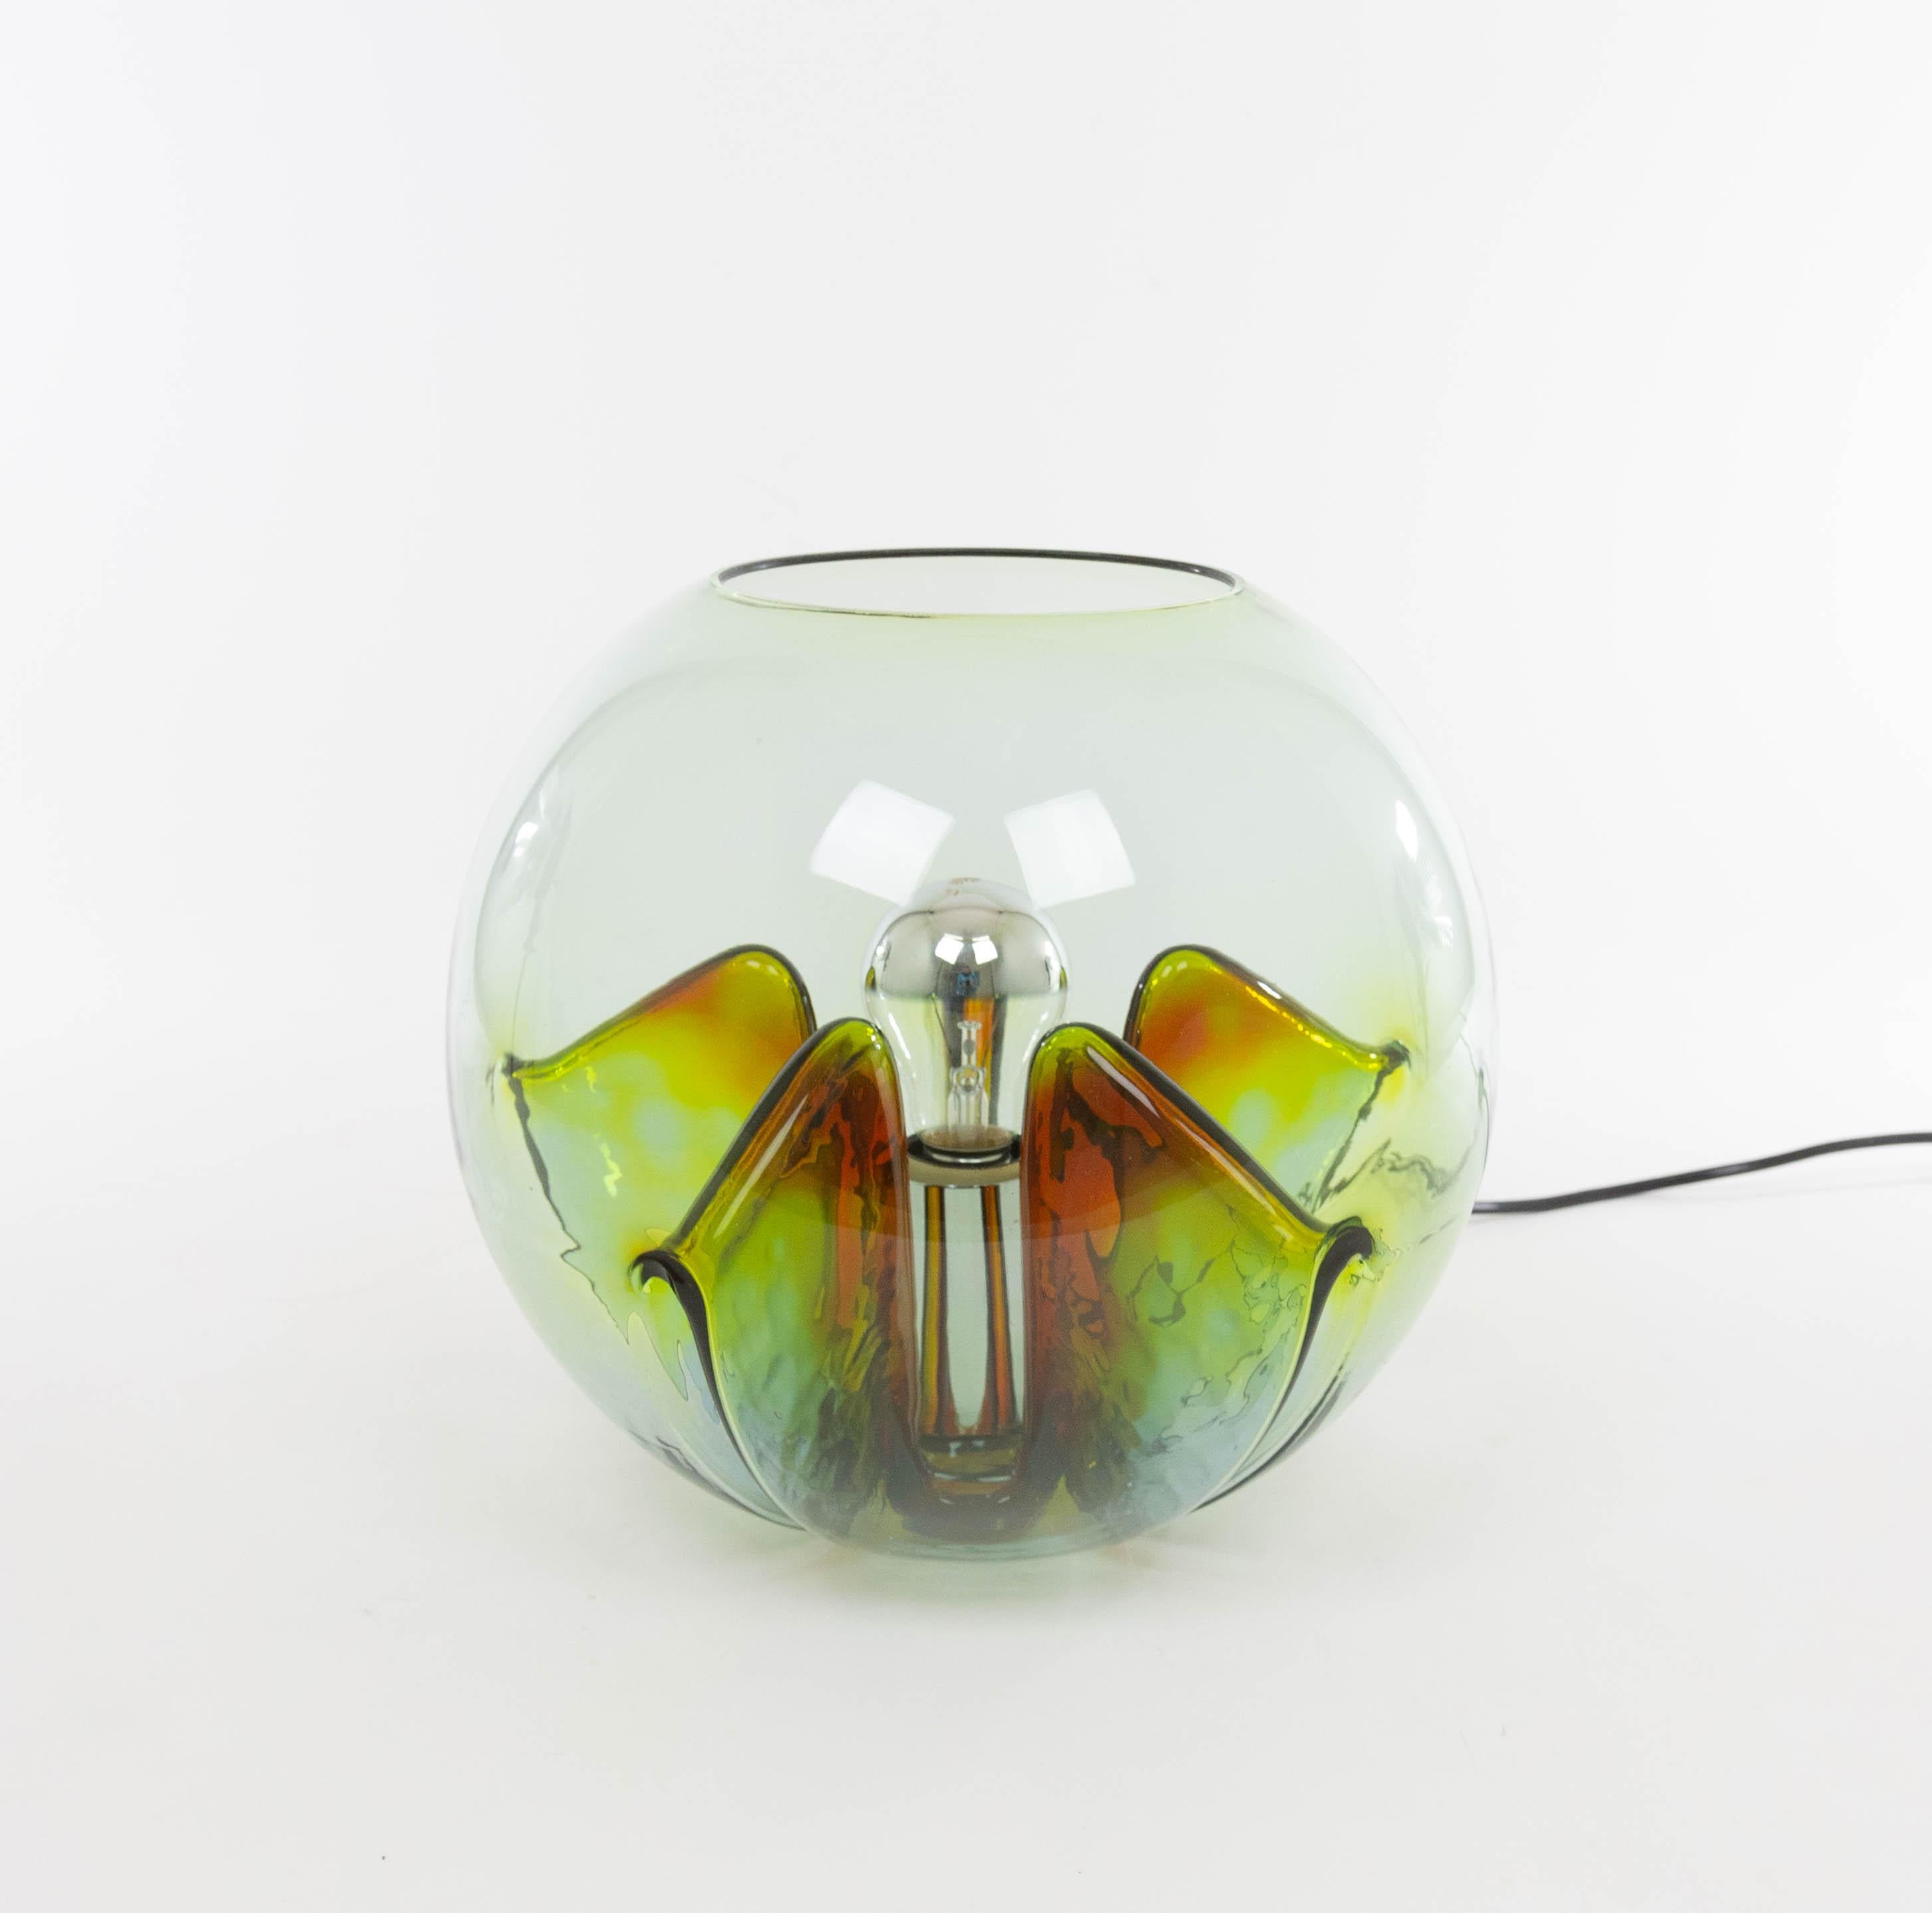 Lampe de table Nuphar conçue par Toni Zucchini et produite par VeArt dans les années 1970.

La lampe a un corps en verre sphérique avec cinq plis repliés vers l'intérieur et une armature en métal chromé. Les nuances de jaune, de vert et de marron se